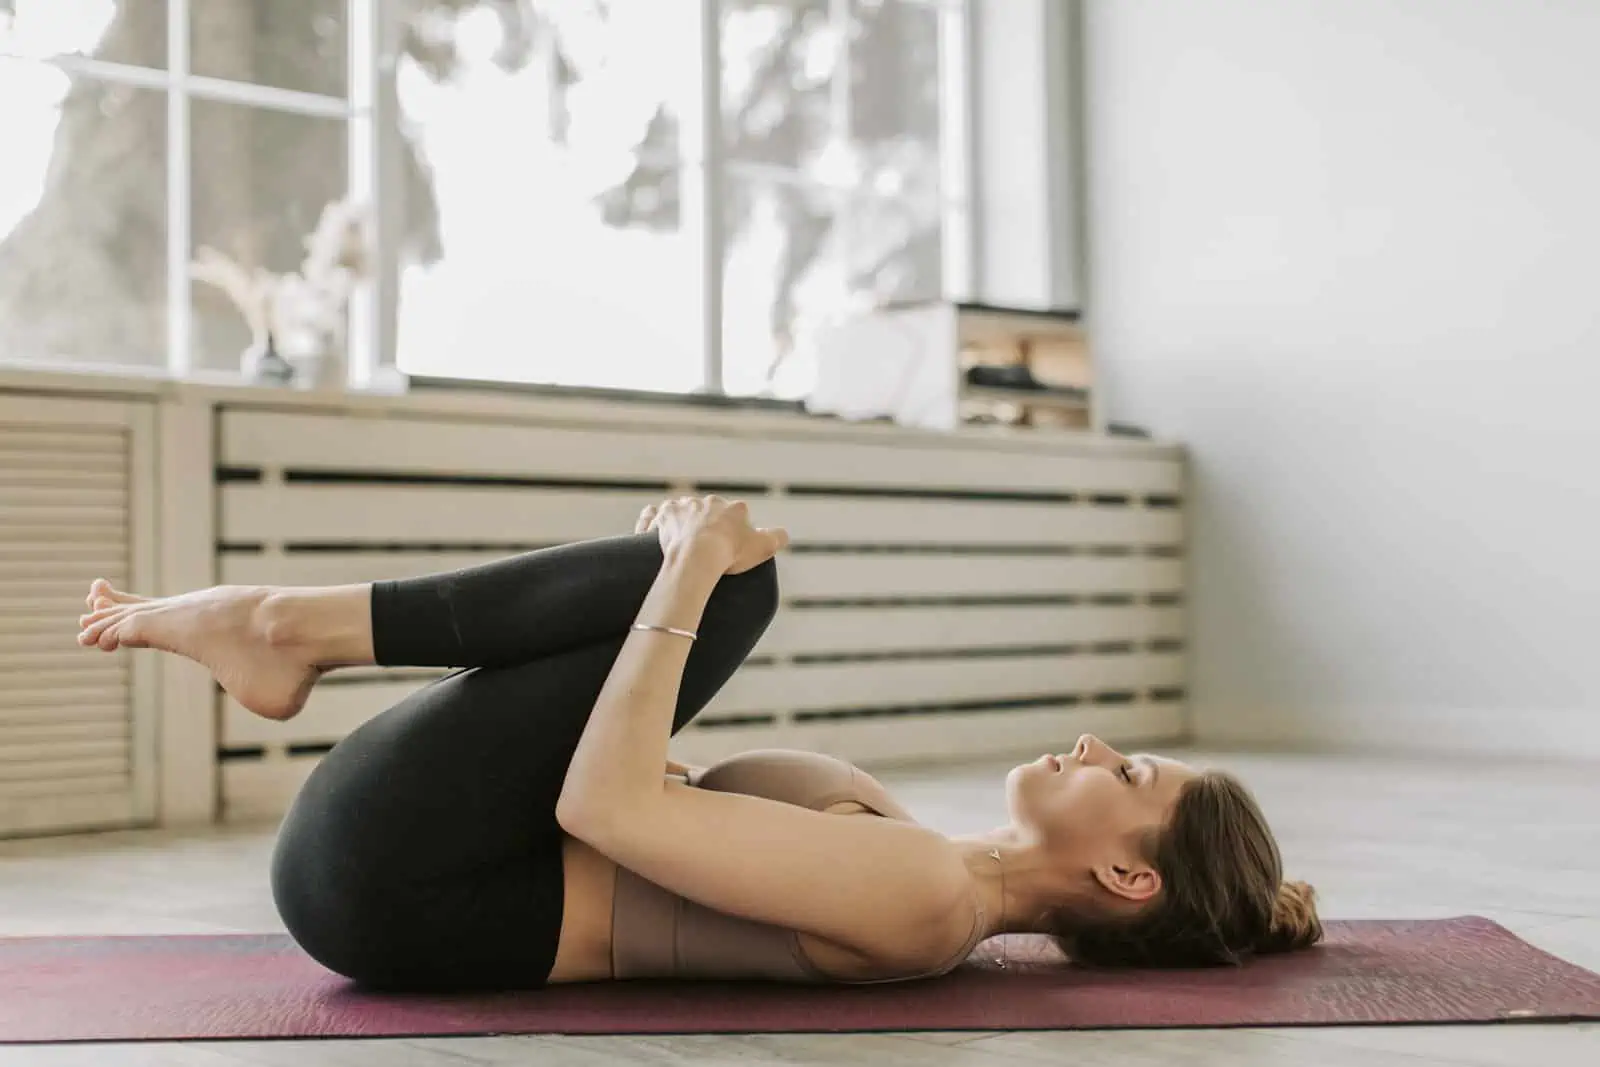 Chakrasana (Wheel Pose) - Yoga Asana for Fitness of Back and Spine